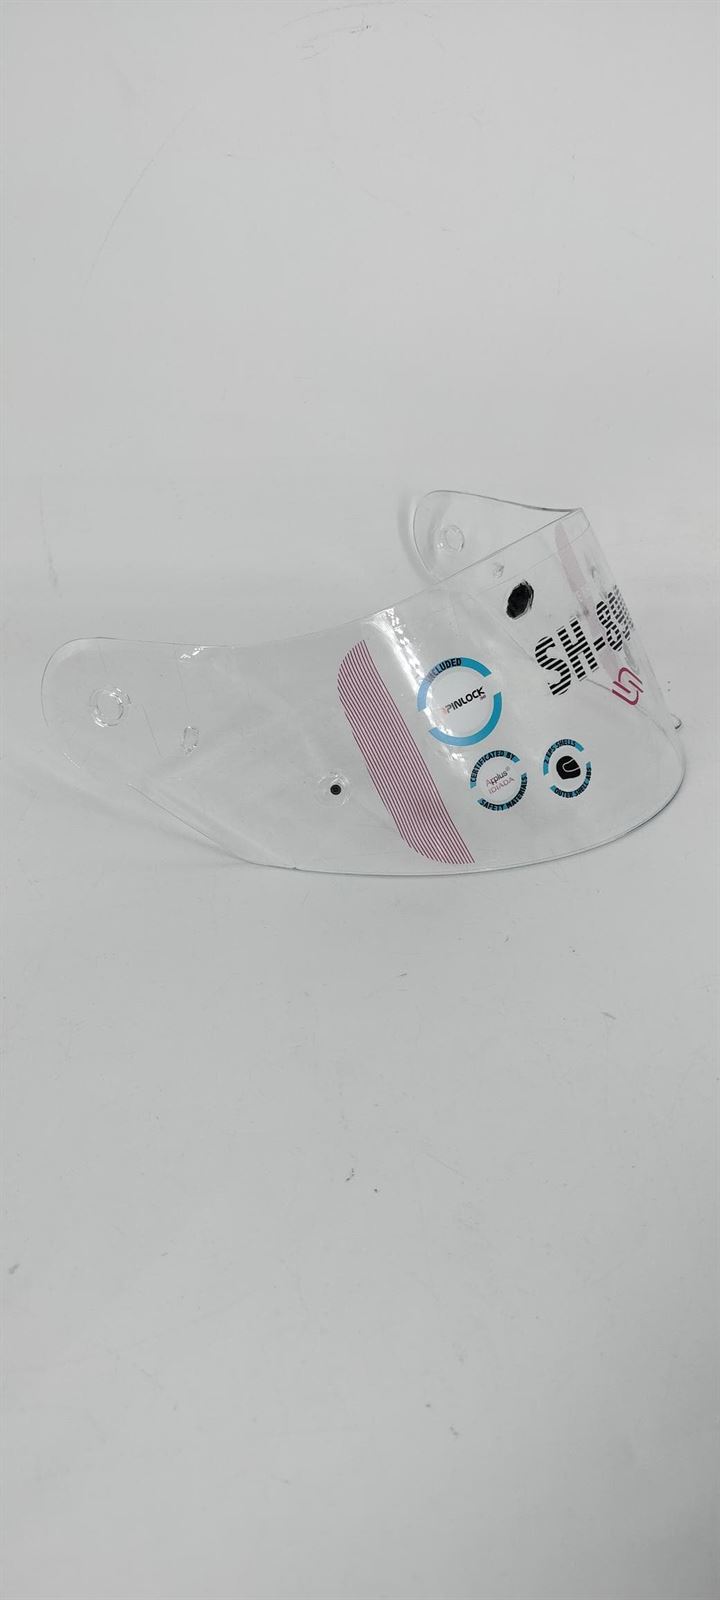 Pantalla casco integral Shiro SH-890 / SH-336 transparente - Imagen 2